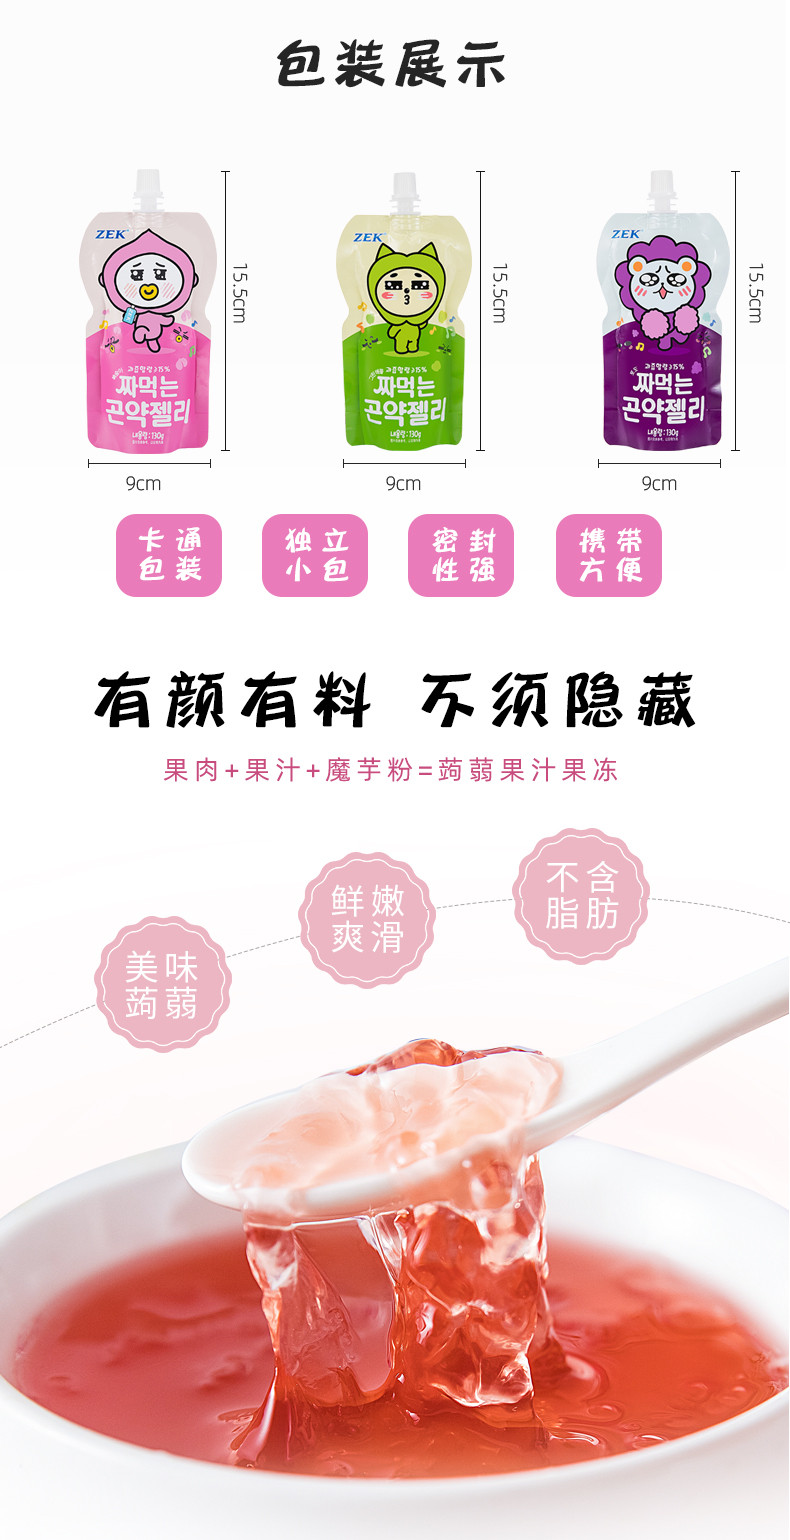 马来西亚进口食品zek蒟蒻果冻130g*3袋葡萄/白桃/苹果汁儿童吸吸果冻零食魔芋果冻水果汁零食